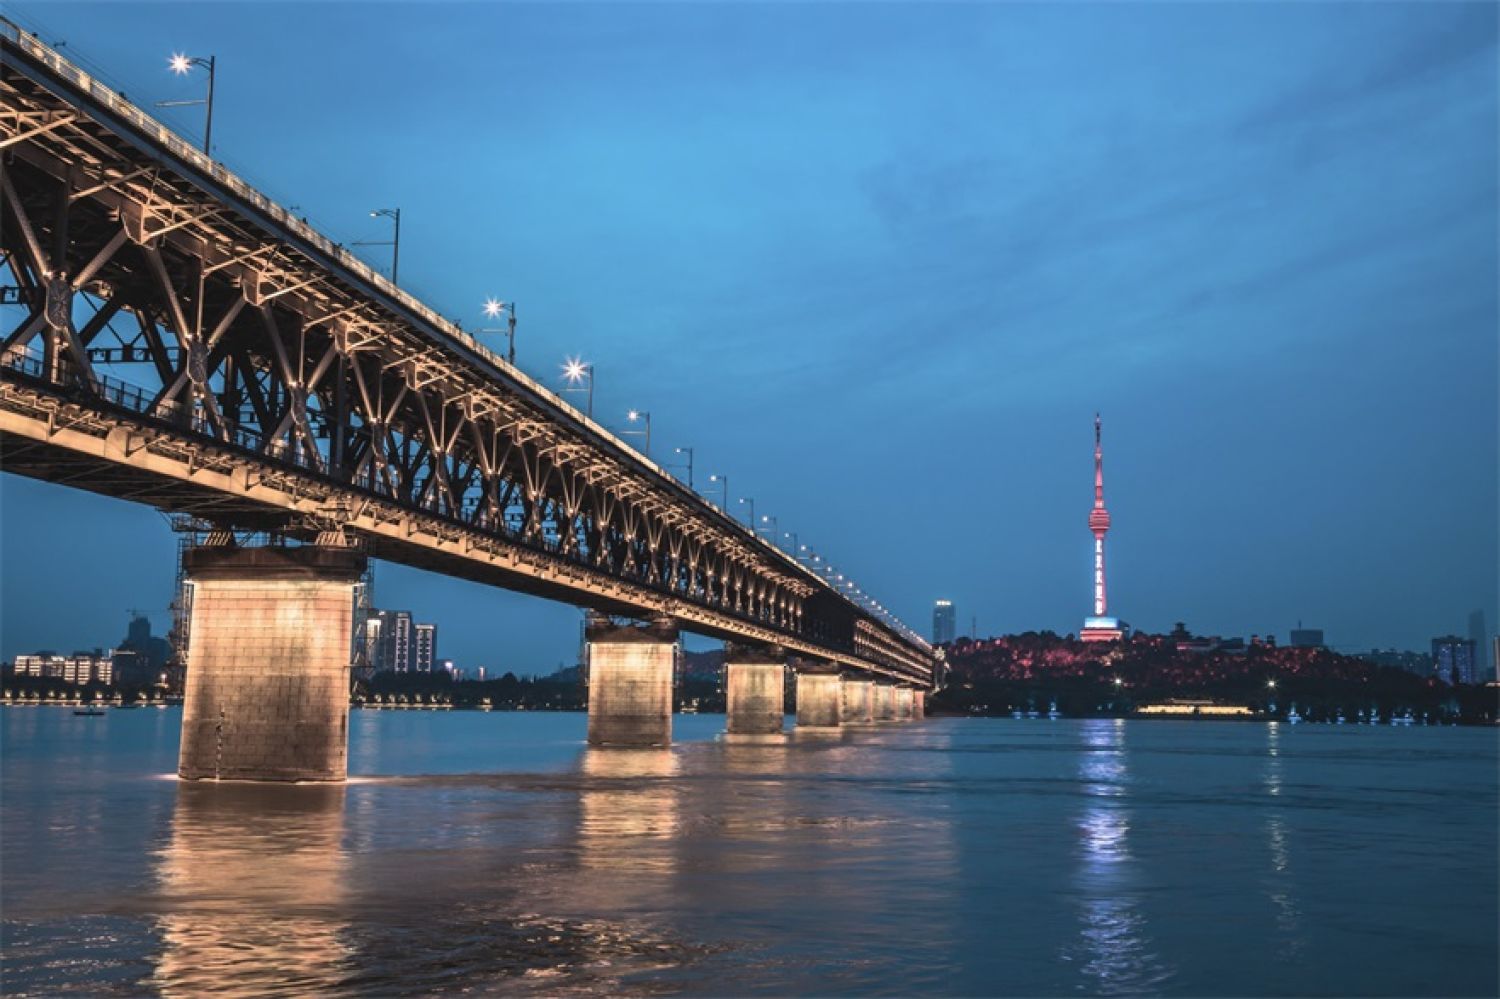 欣赏武汉长江大桥,万里长江第一桥魅力